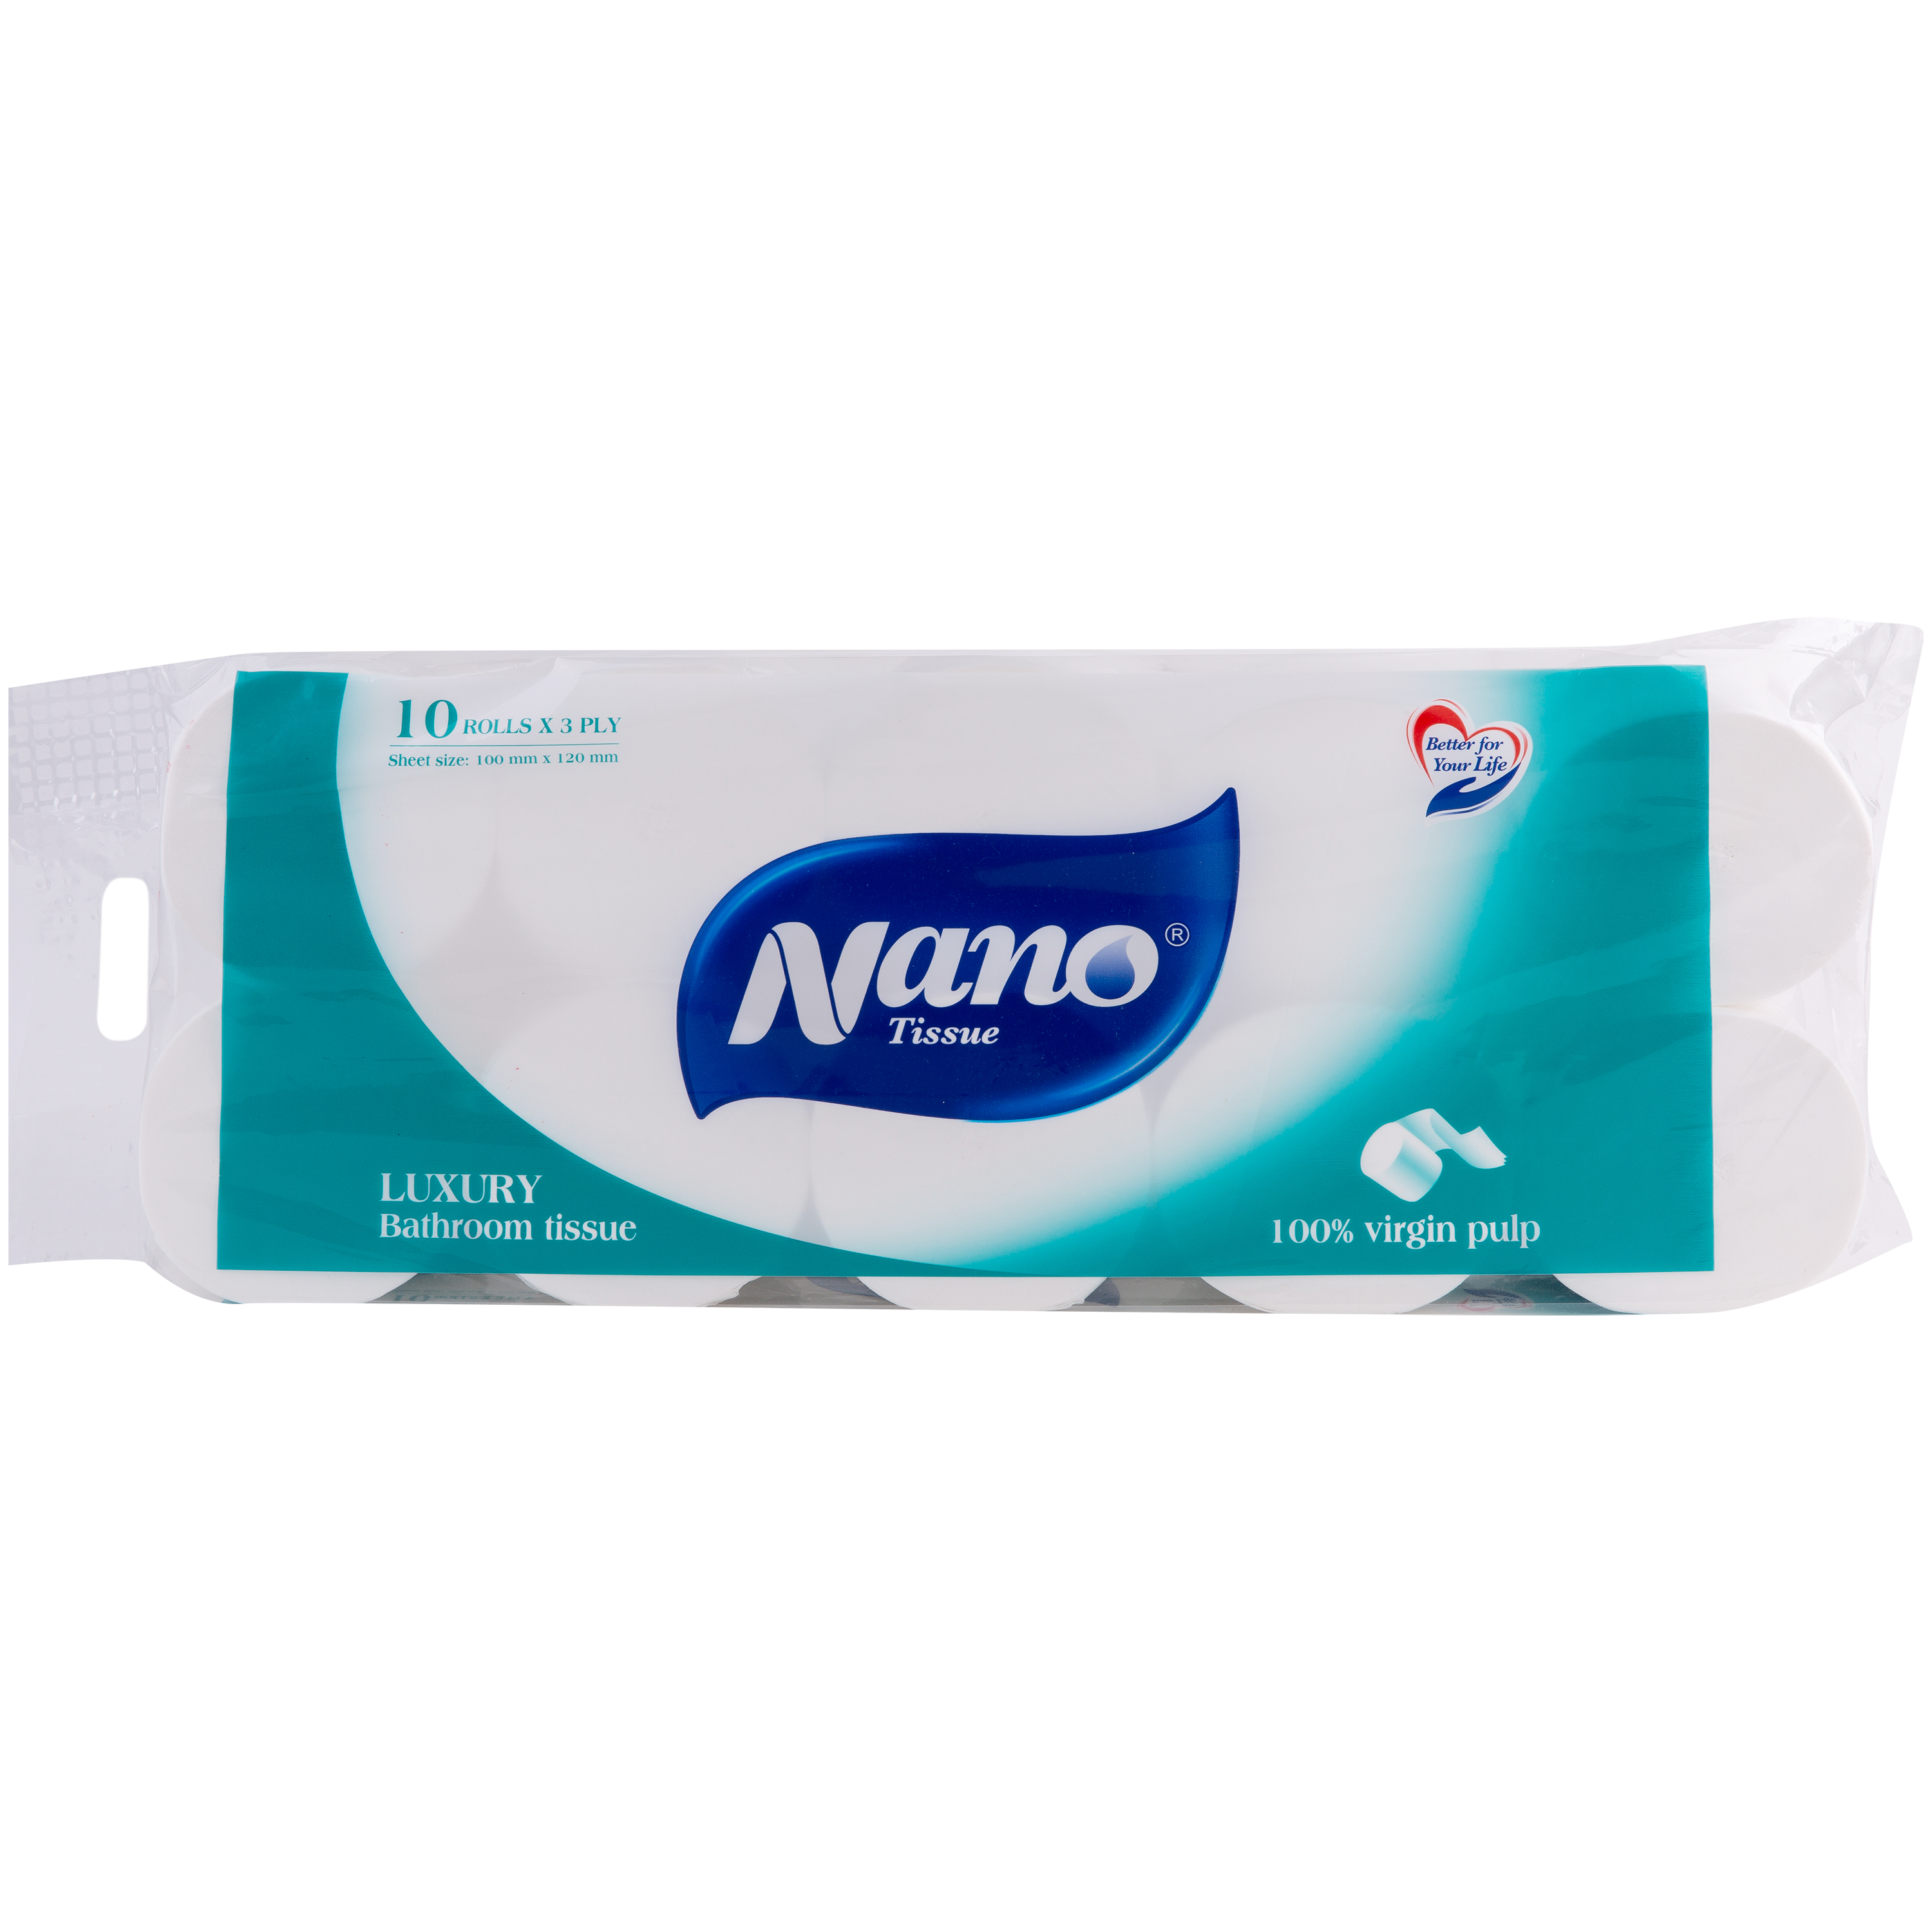 [MUA 1 TẶNG 20 KHĂN] Giấy vệ sinh Luxury không lõi 10 cuộn, thương hiệu Nano, tiết kiệm chi phí cho gia đình-Nano Tissue